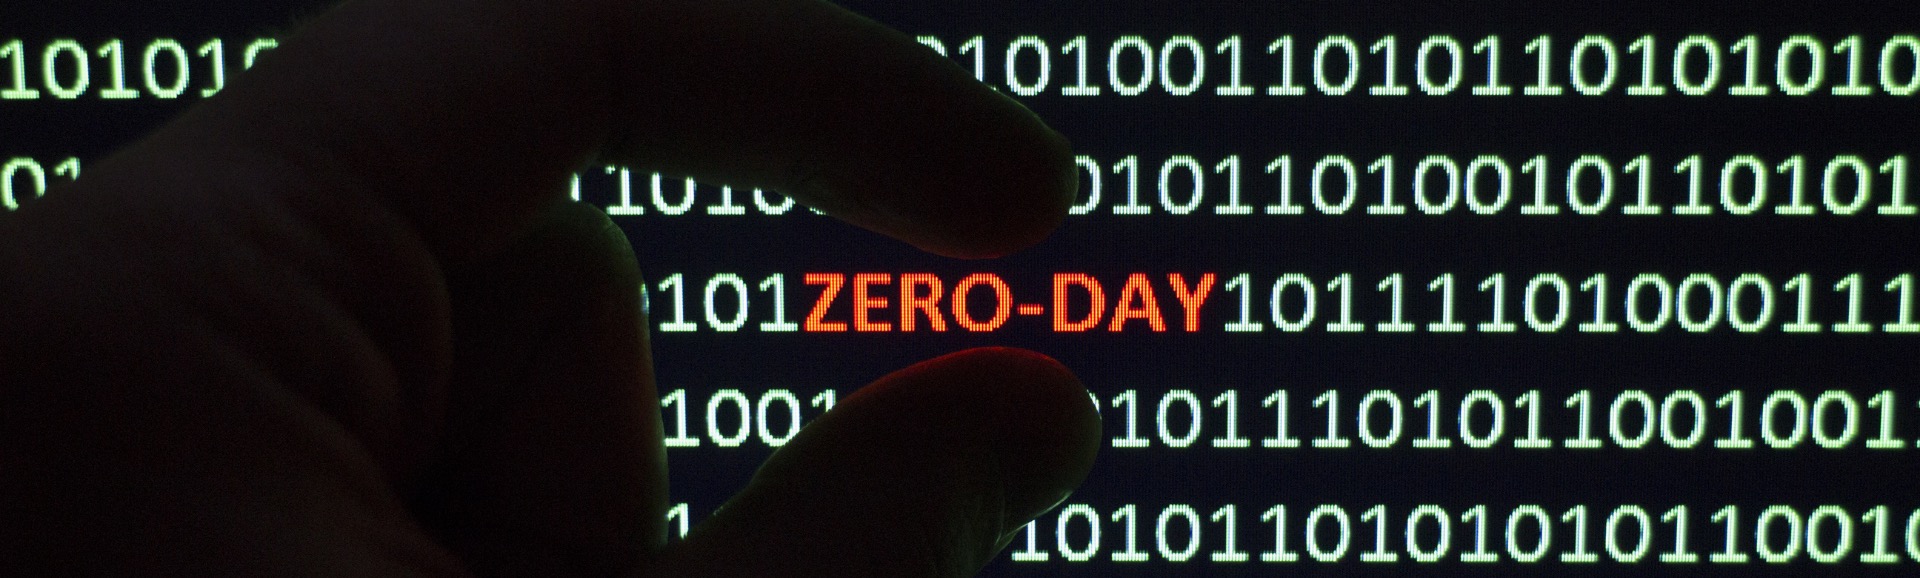 Zero-day-code